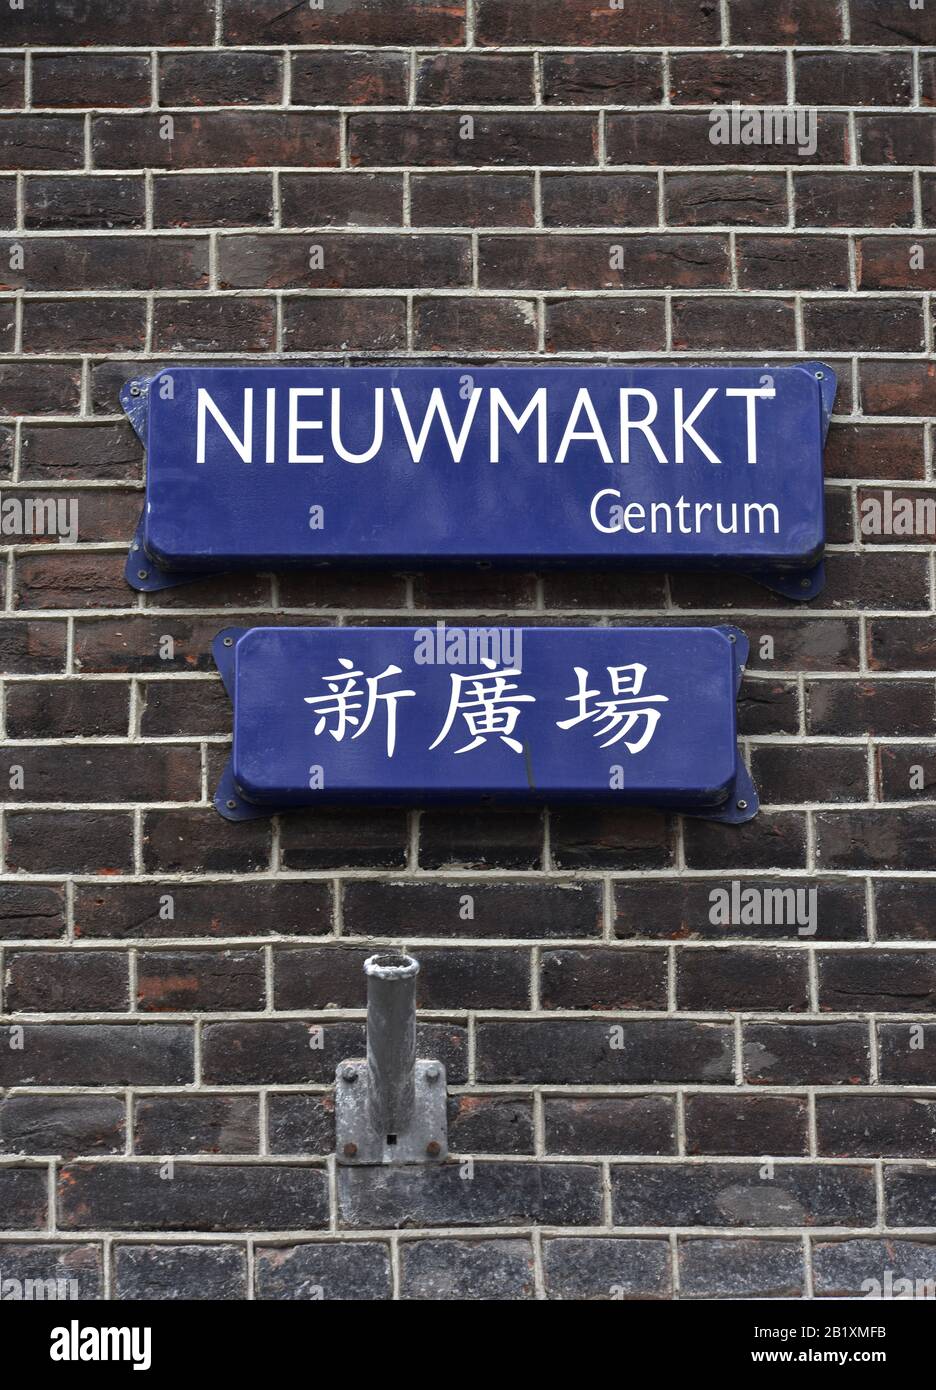 Chinesische Schriftzeichen, Strassenschild, Nieuwmarkt, Amsterdam, Pays-Bas Banque D'Images